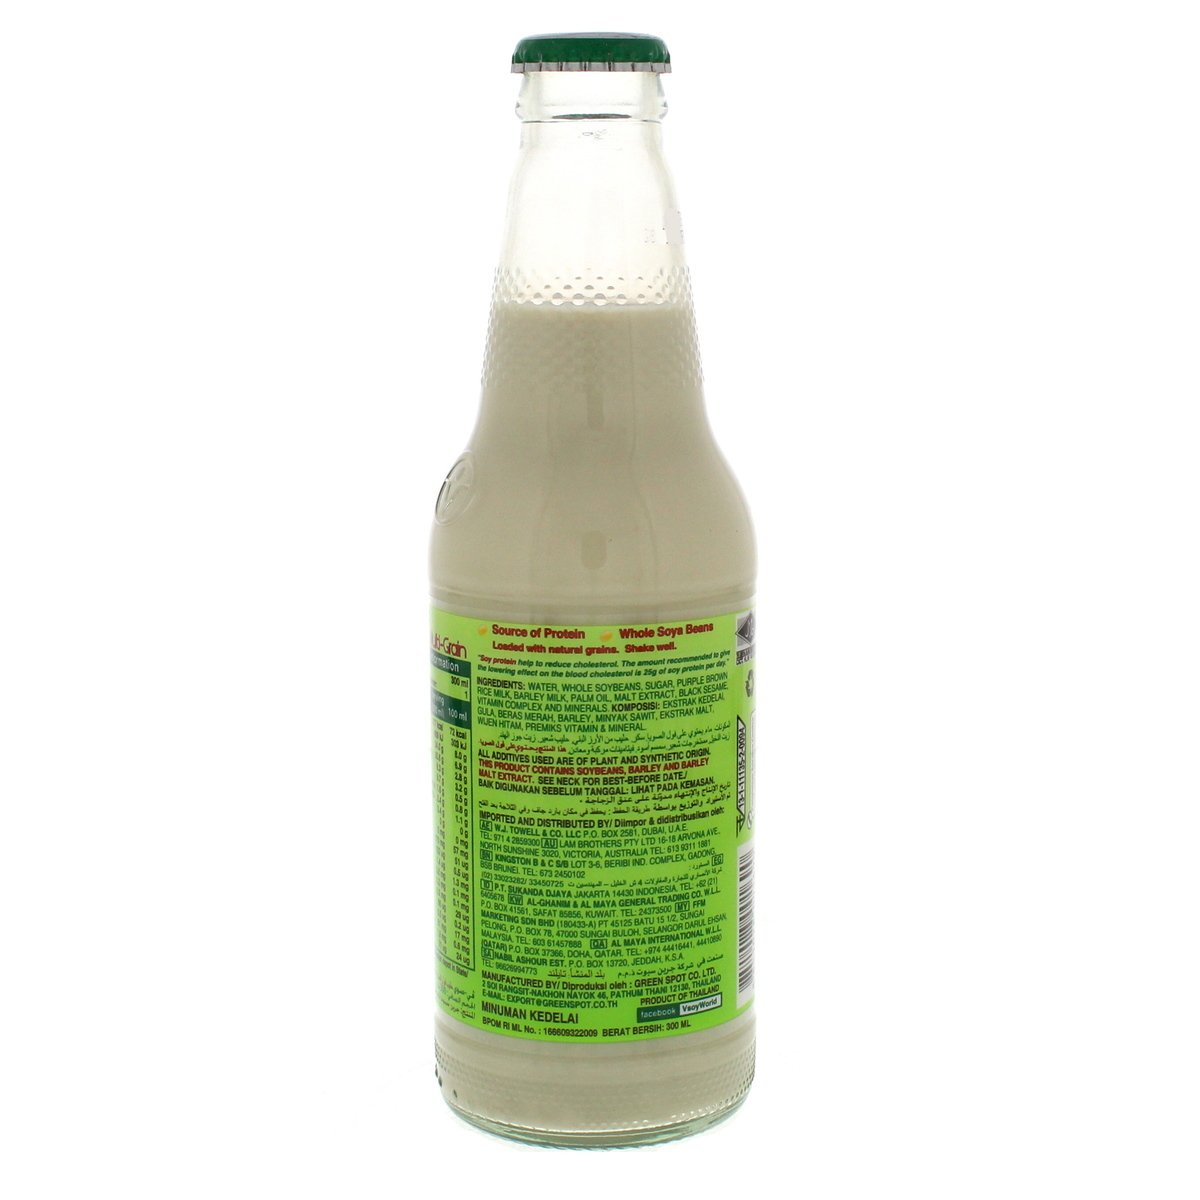 V-Soy Multi Grain Soya Bean Milk 300ml